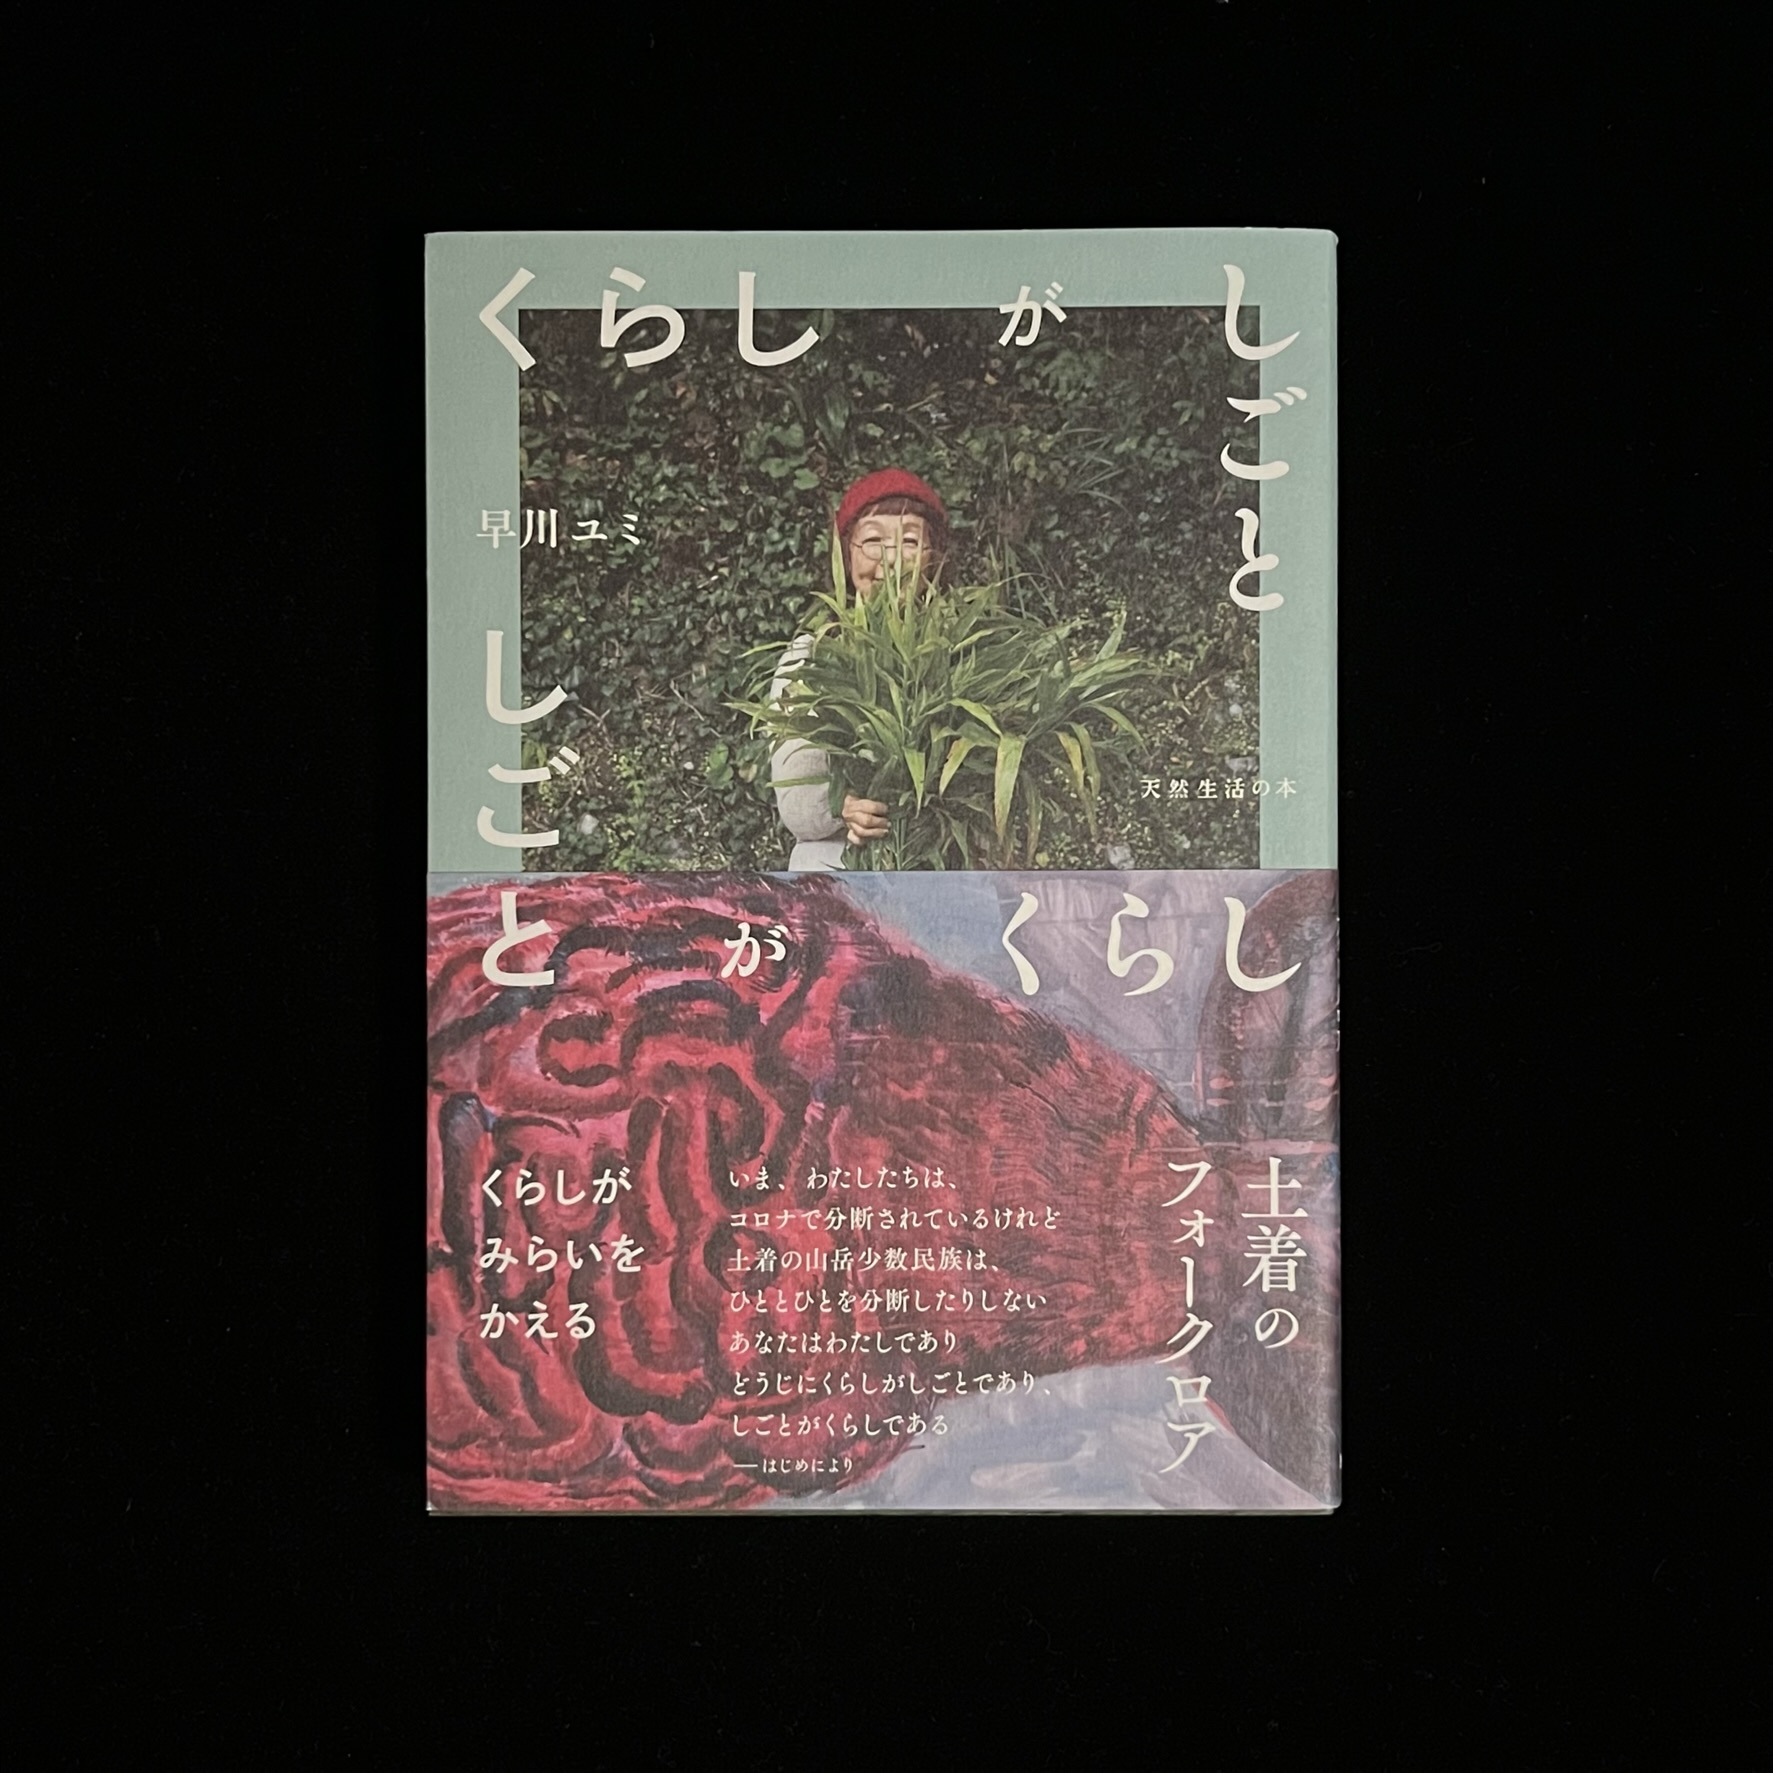 早川ユミさんの『くらしがしごと』の本の表紙の写真。早川ユミさんが収穫した新しょうがの束をかかえている写真が載っています。帯には「土着のフォークロア」や「くらしがみらいをかえる」の文字が書かれています。